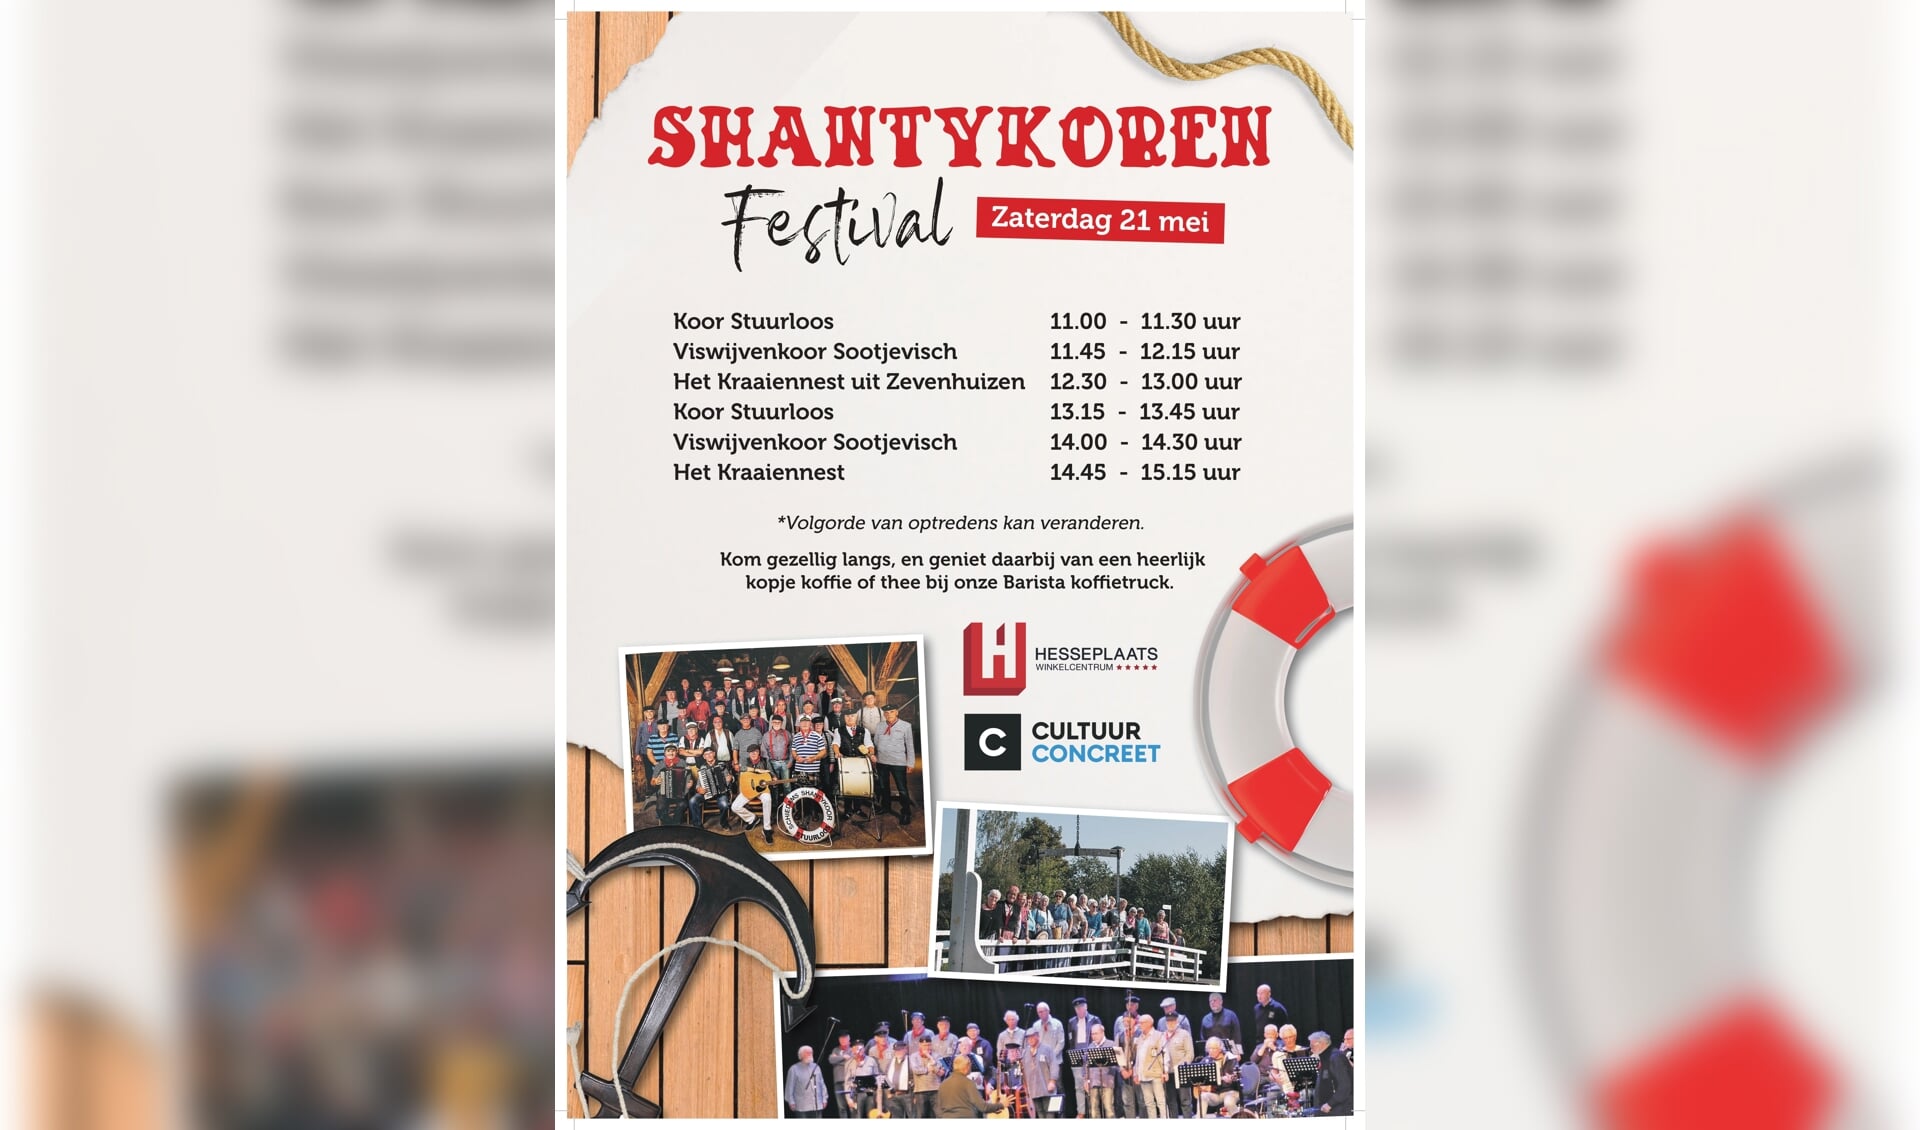 Shantykoren-festival op zaterdag 21 mei op de Heseplaats in Rotterdam-Ommoord.